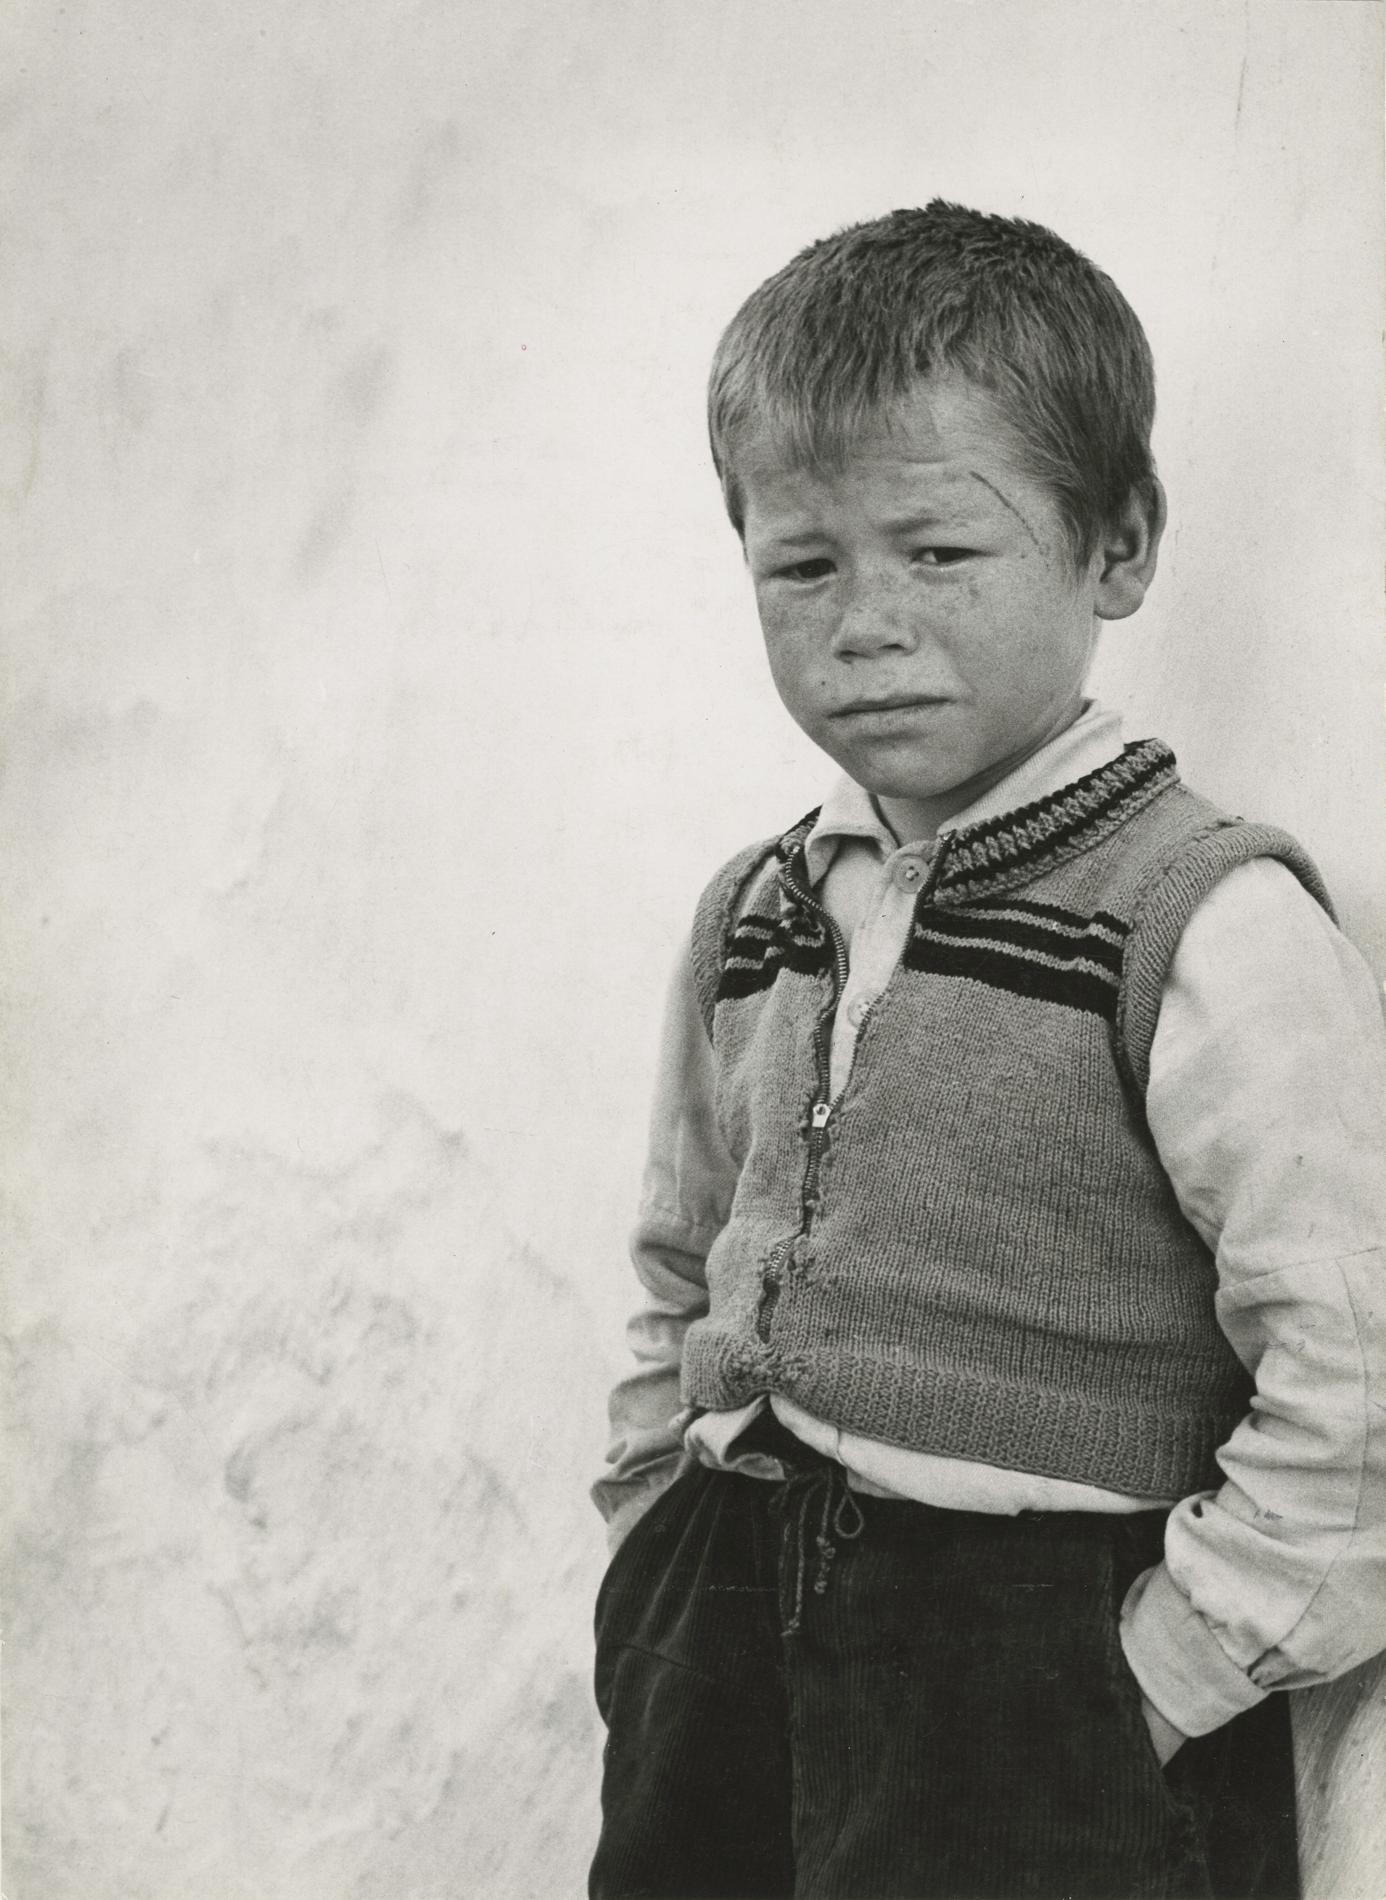 Ormond Gigli Black and White Photograph - Portuguese Boy, Portugal